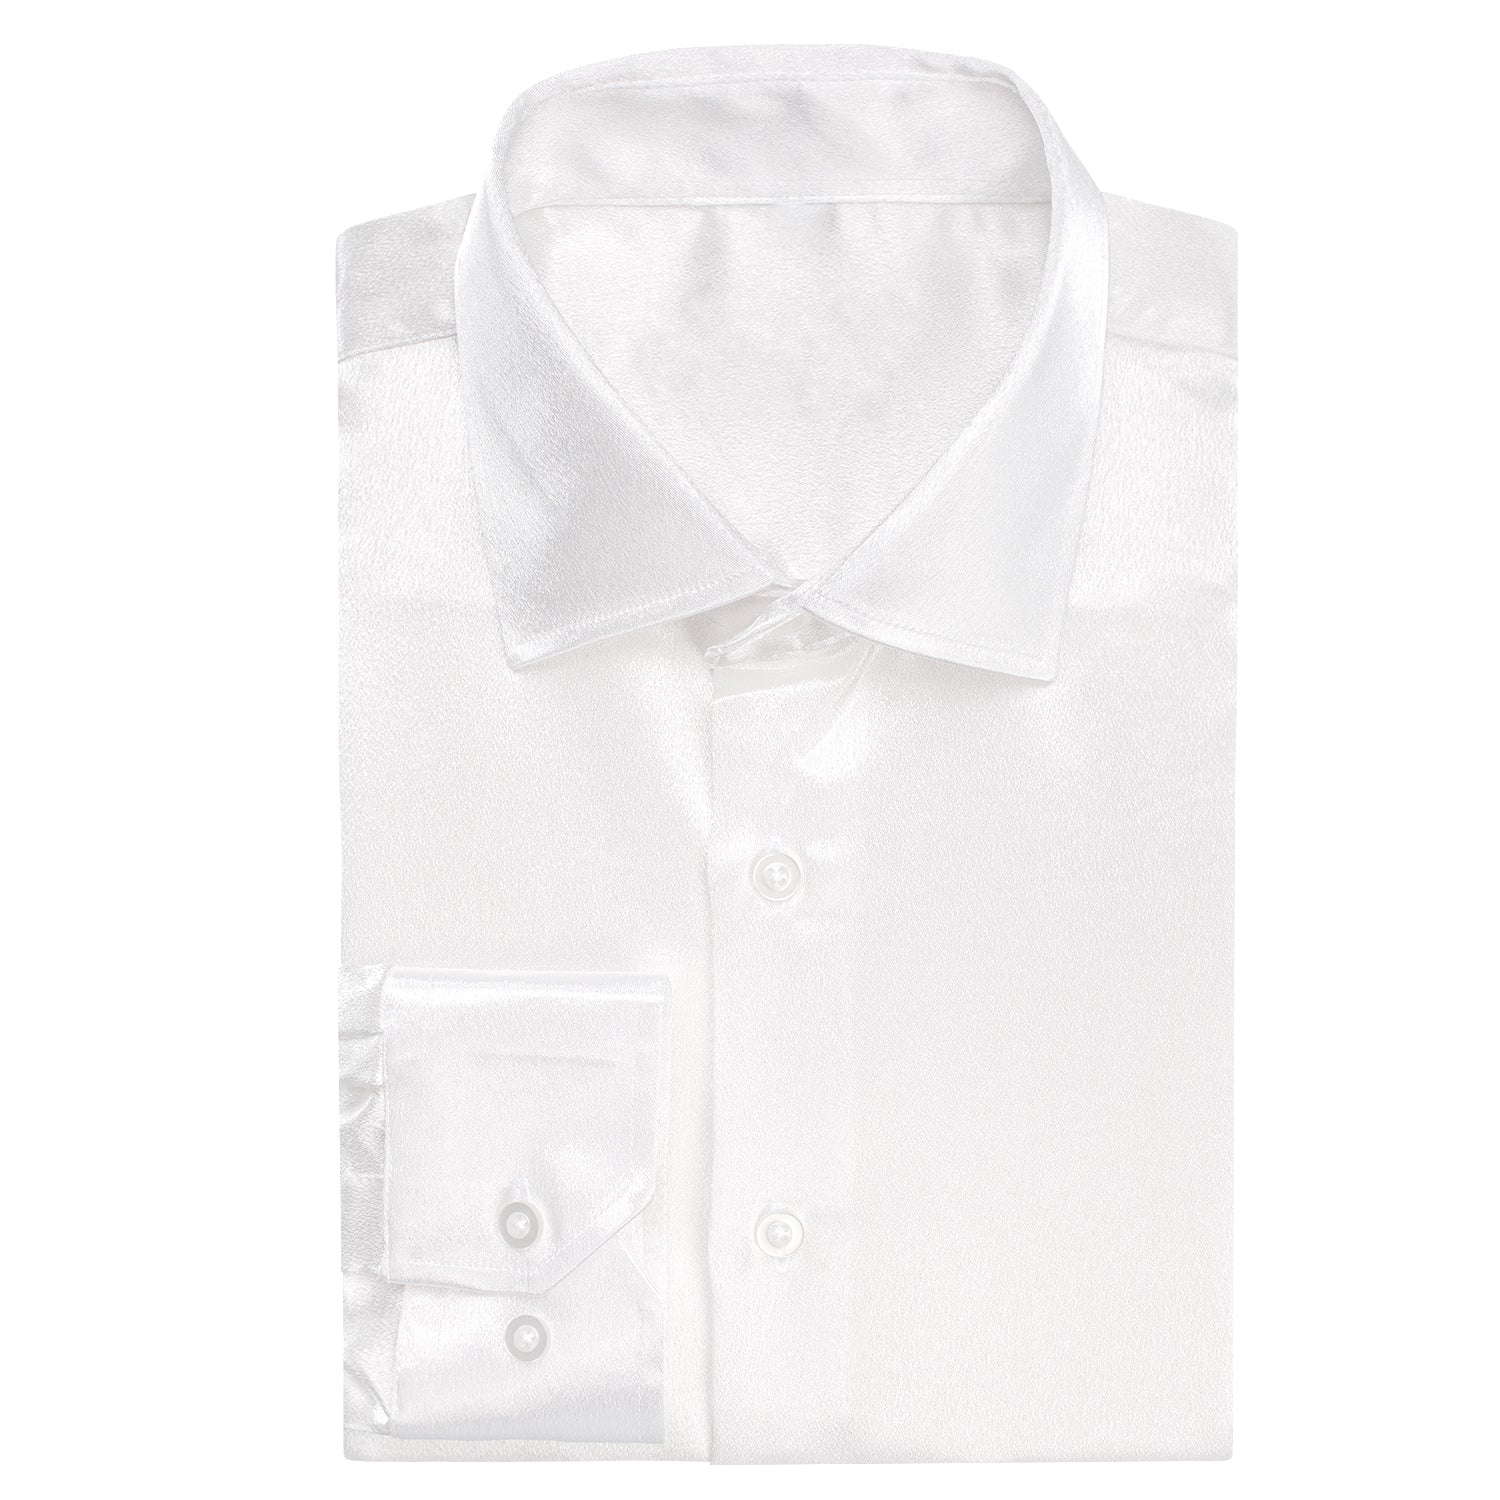 New White Satin Silk Men's Long Sleeve Shirt